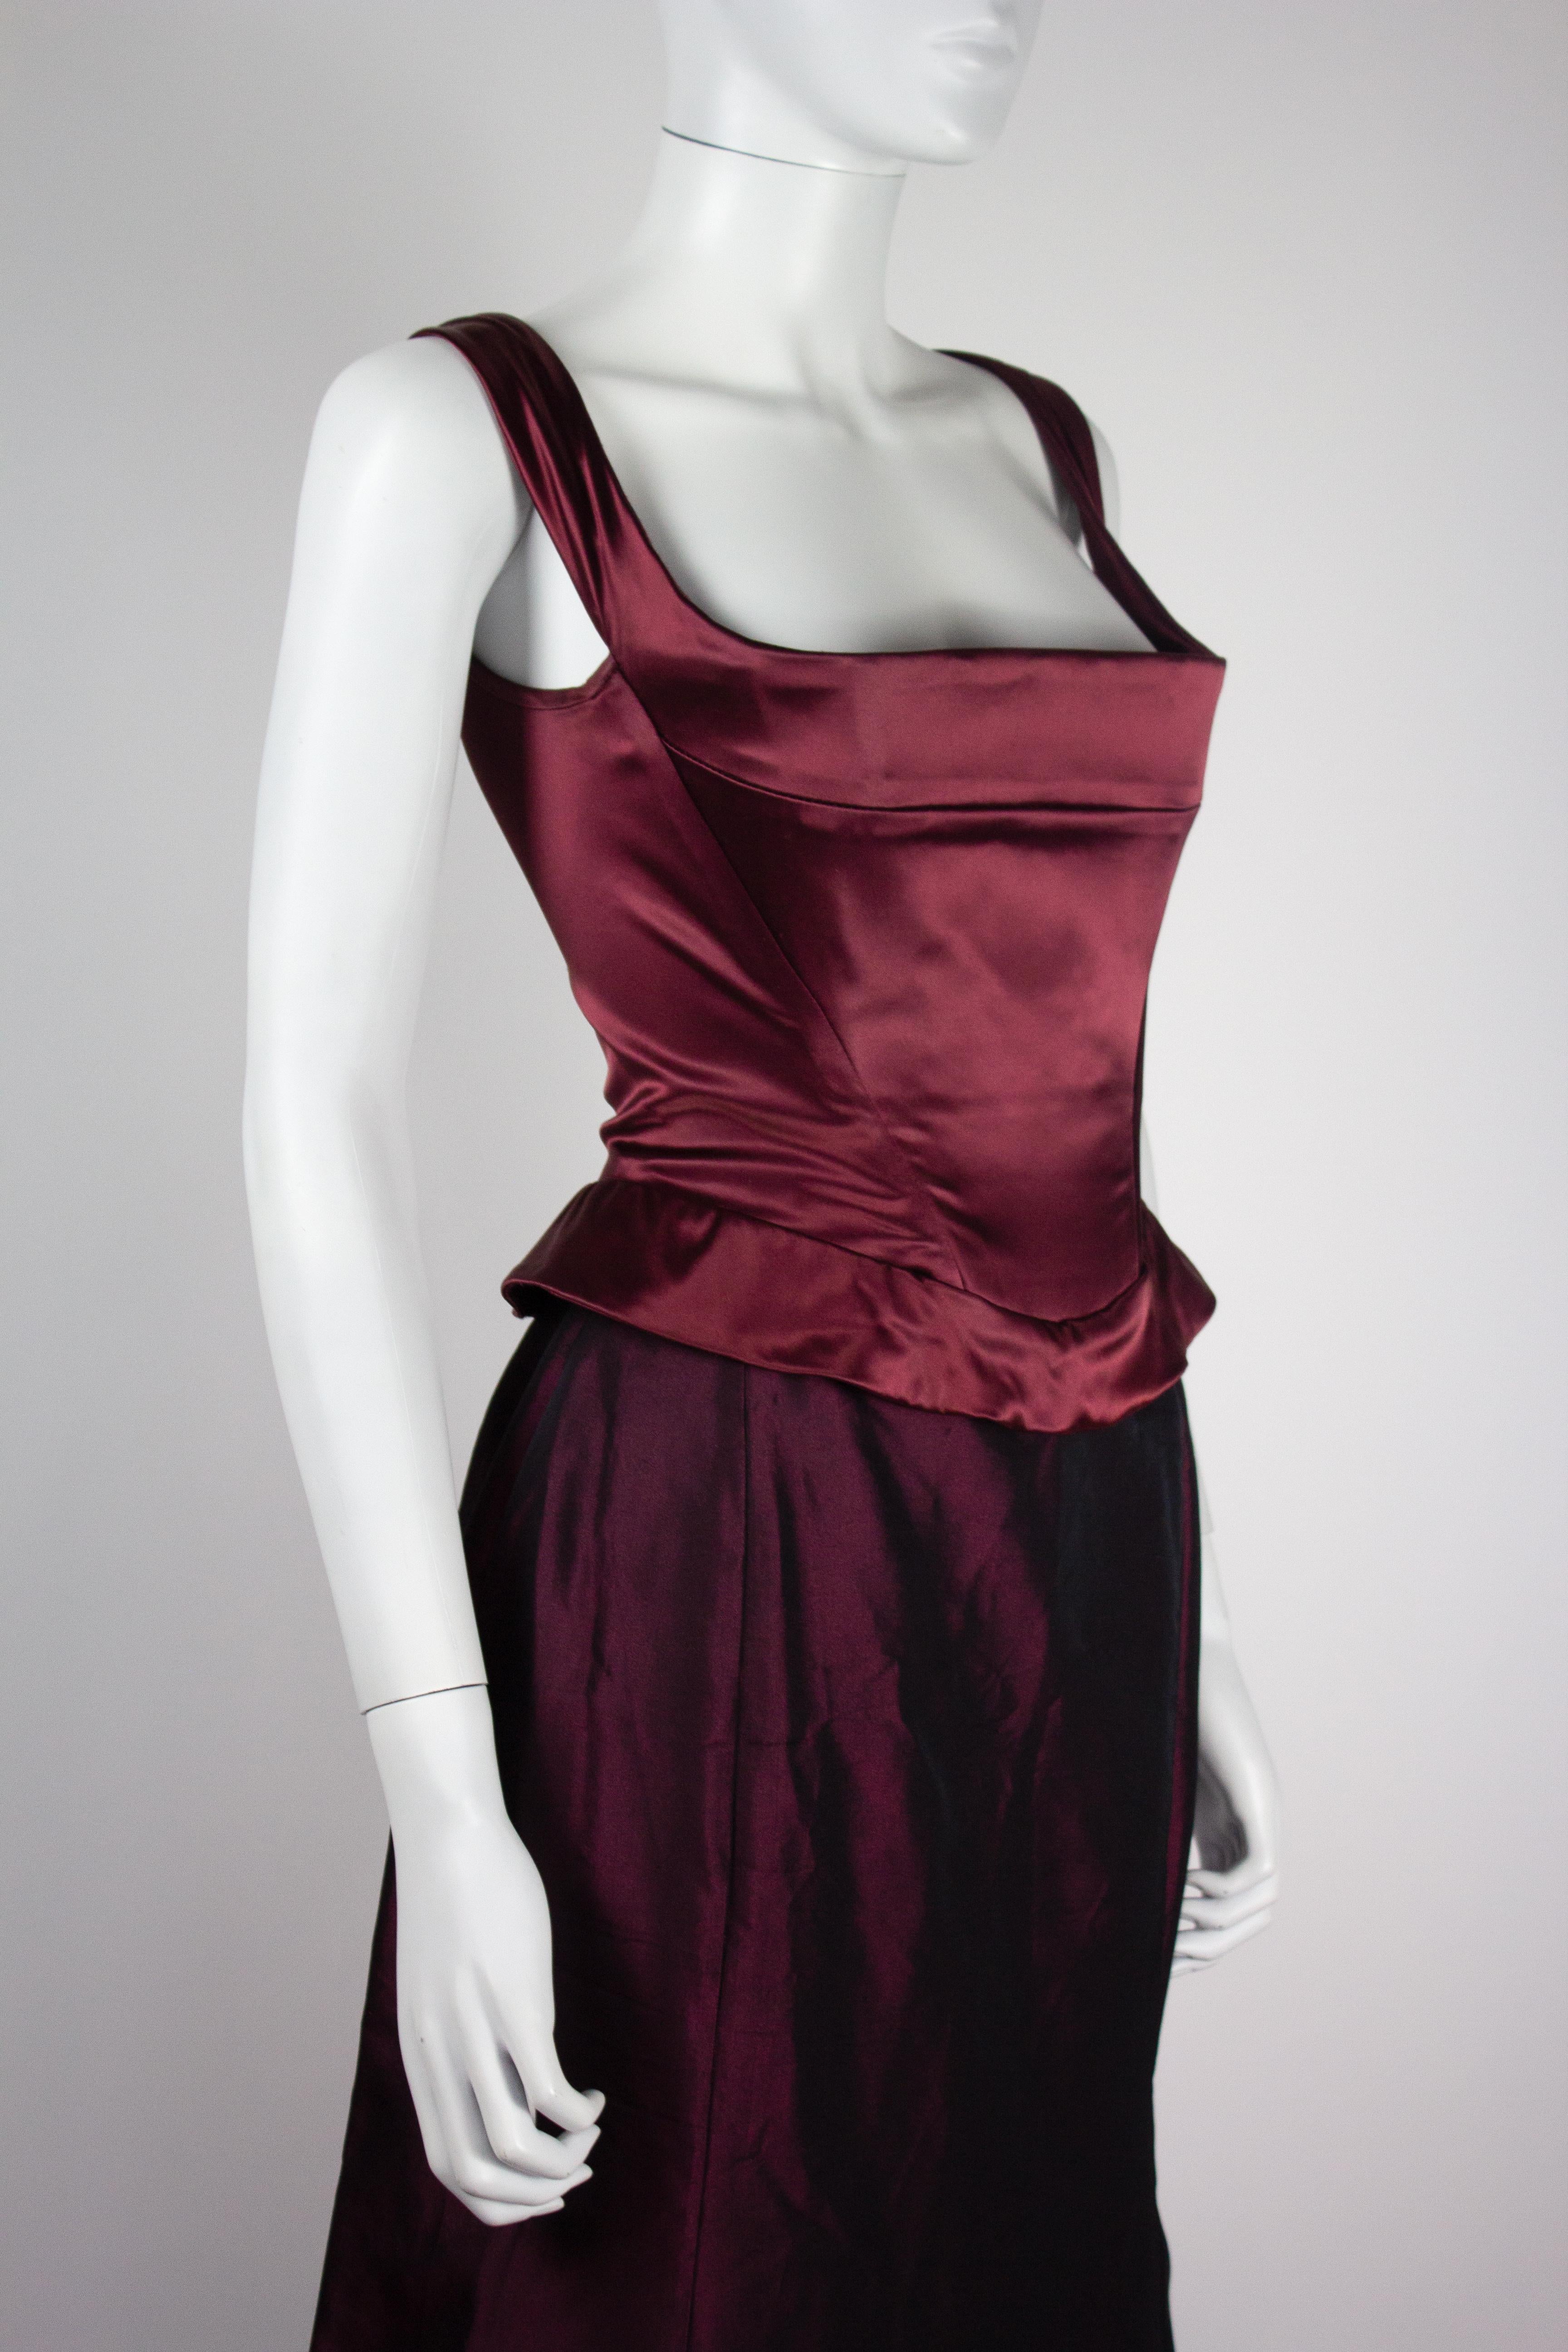 Ensemble corset et jupe de Vivienne Westwood de la collection automne-hiver 1996. La couleur est un bordeaux irisé/violet foncé en soie. 

Condit
Très bon état dans l'ensemble. Le corset n'a pas de défaut majeur, quelques ternissements au niveau de